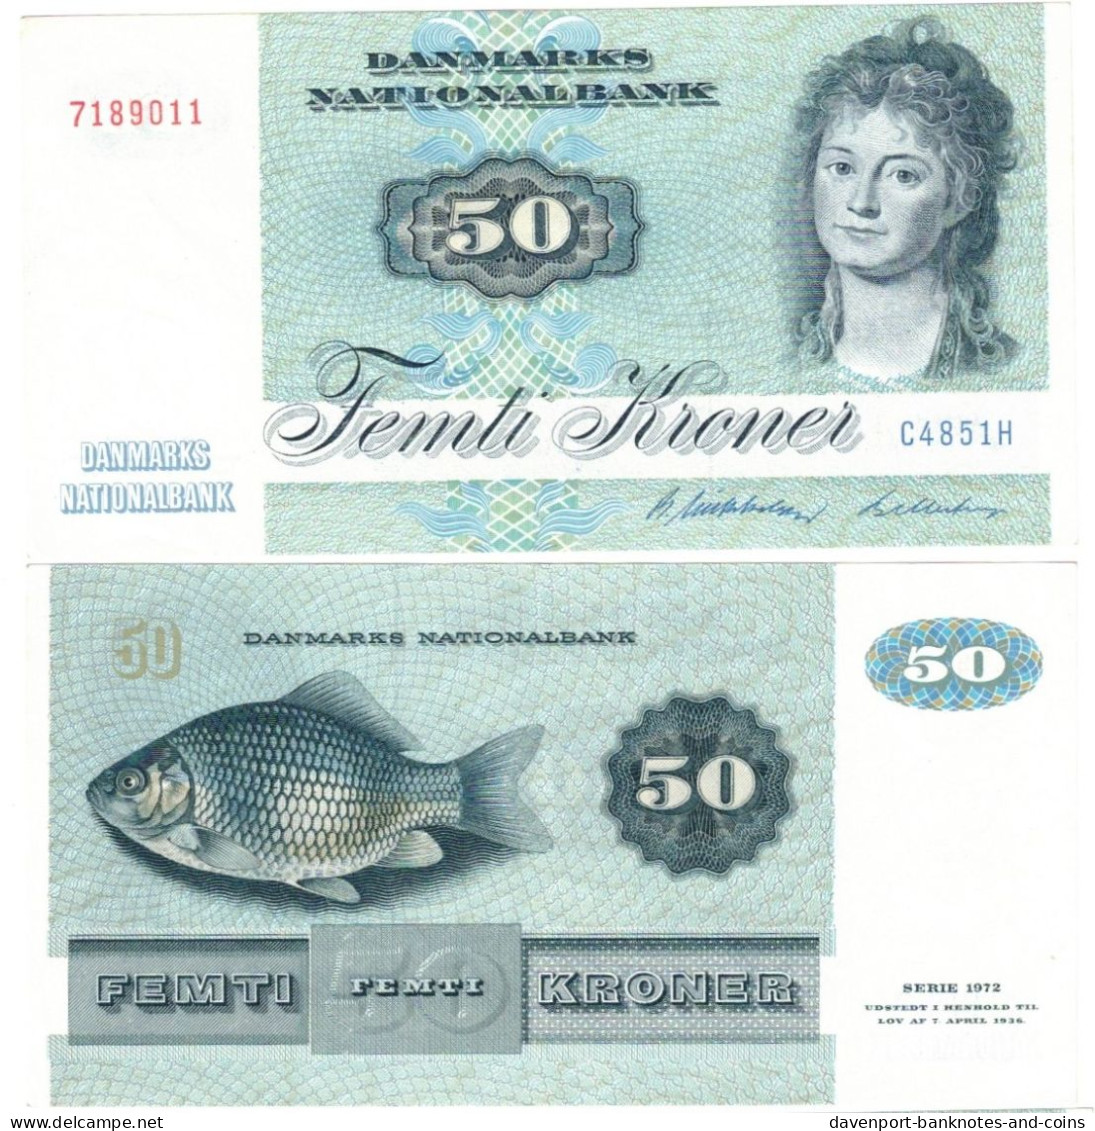 Denmark 50 Kroner 1985 EF "Mikkelsen/Billestrup" - Danemark